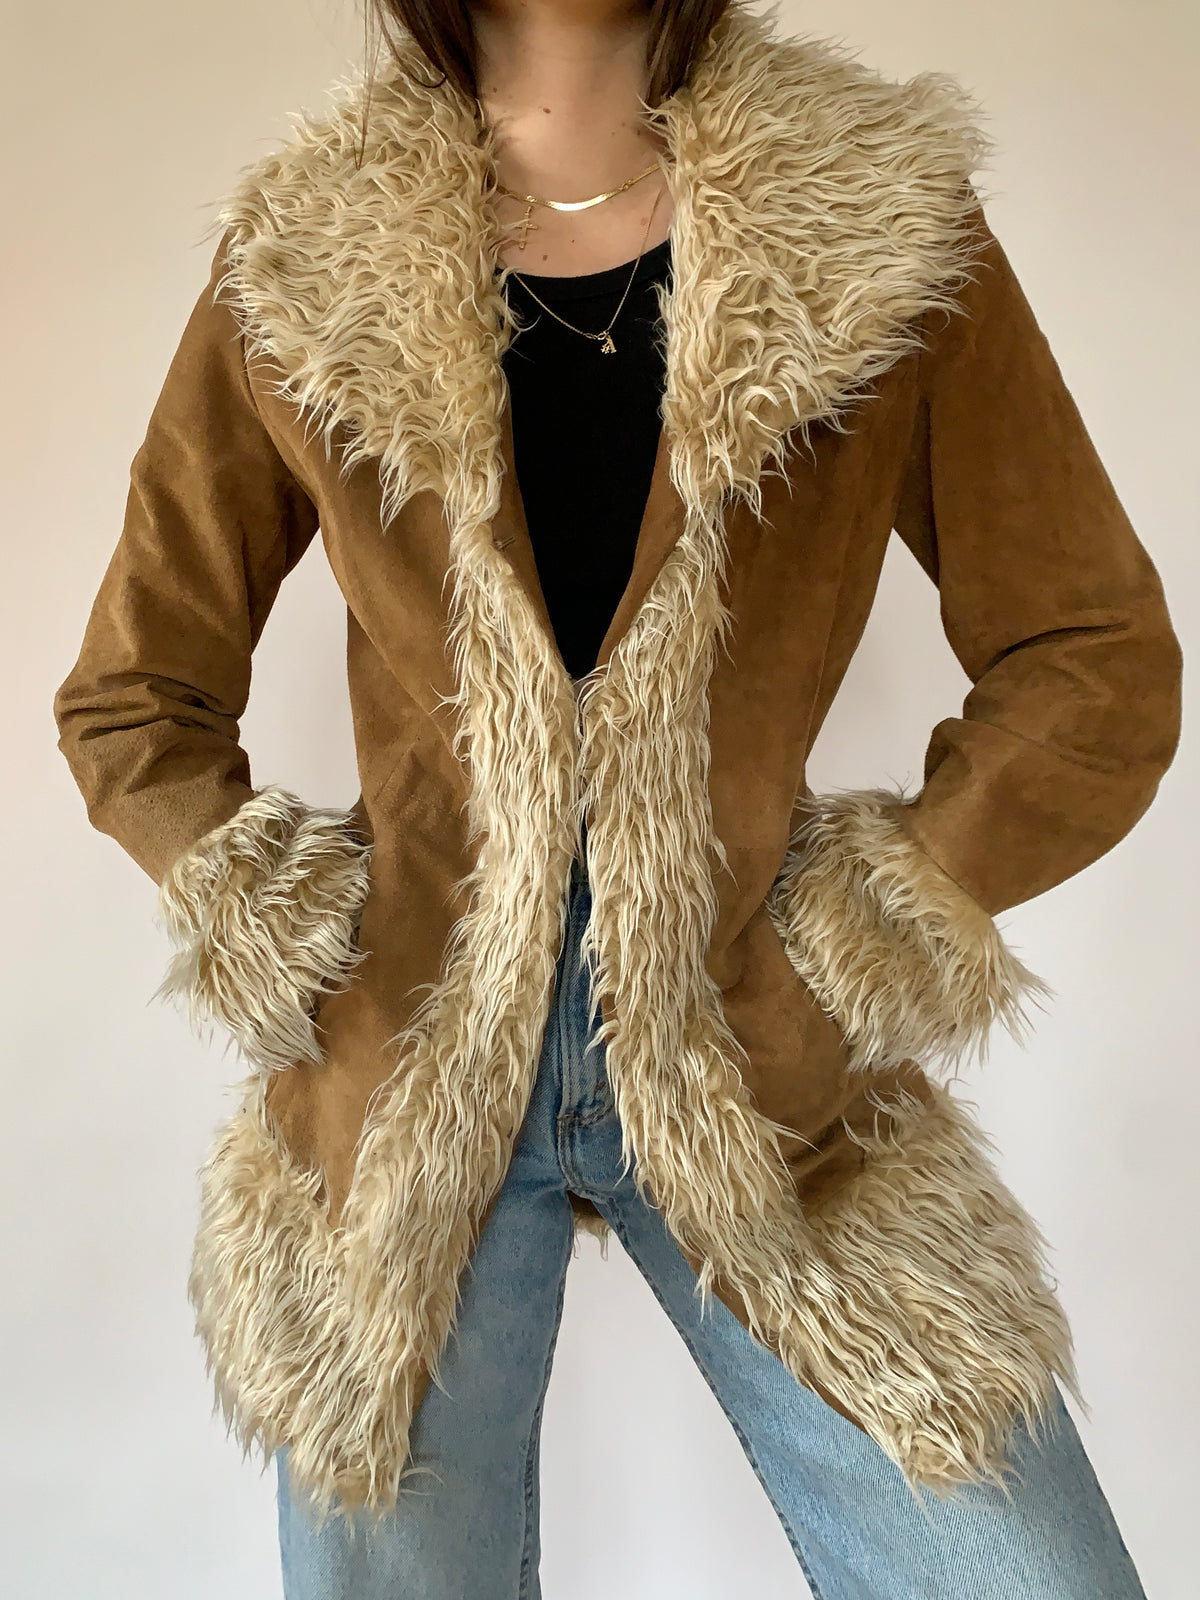 Beige Suede Sherpa Coat 00's, Size Medium, Y2K Penny Lane Style Coat, Faux  Fur Lined Casual Boho Coat, Women Winter Wear, 00's Clothing 